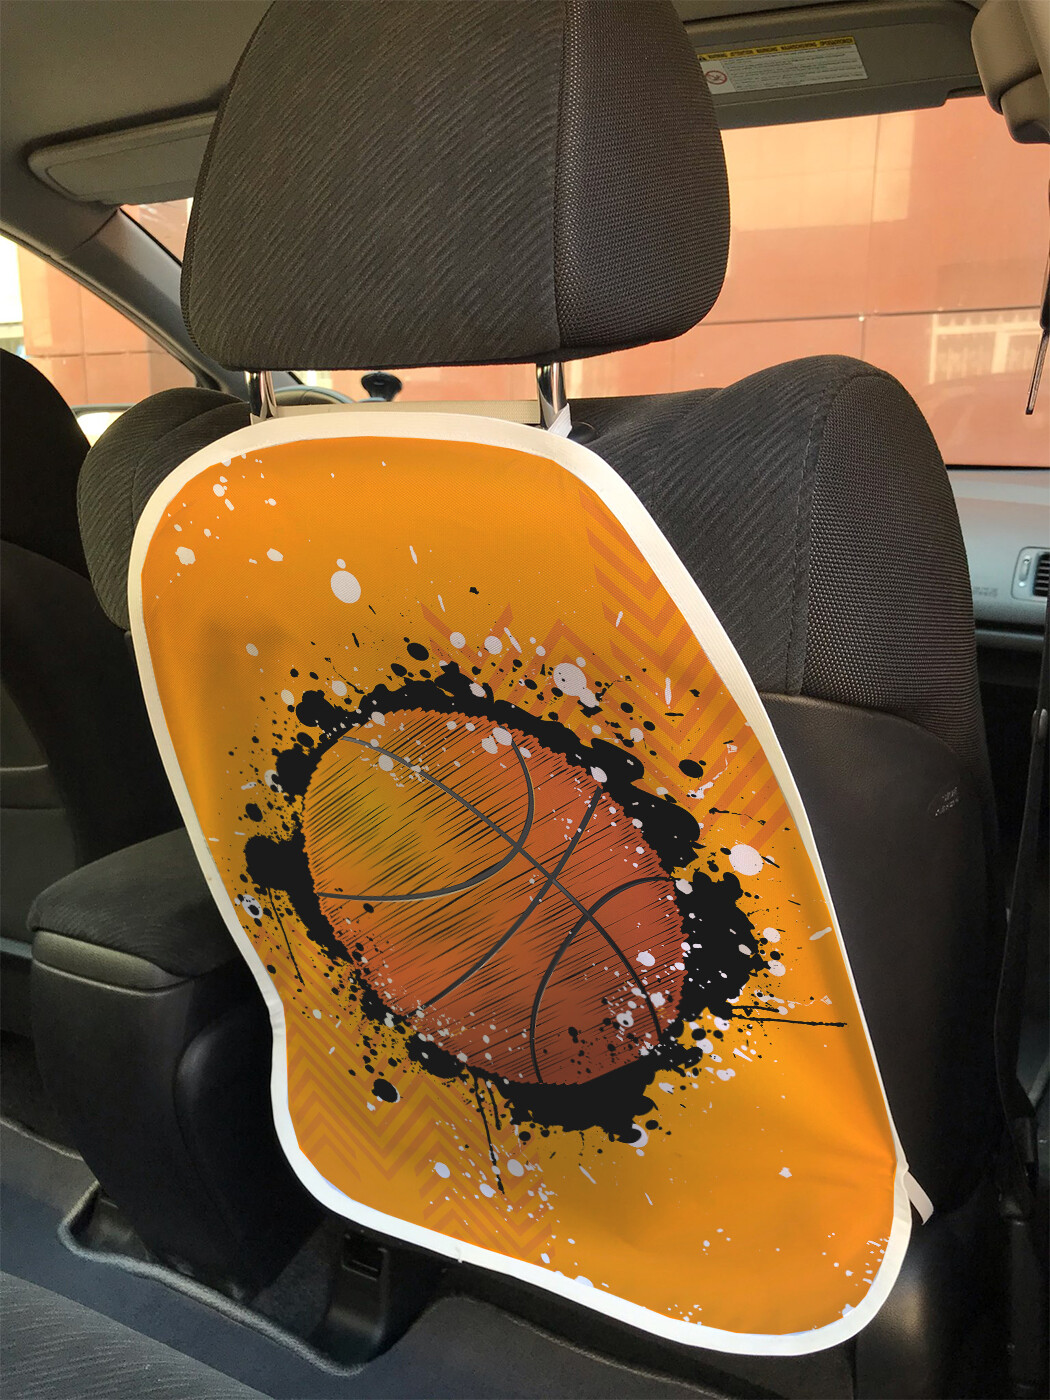 фото Накидка на спинку сиденья joyarty пятнистый баскетбольный мяч, 45х62